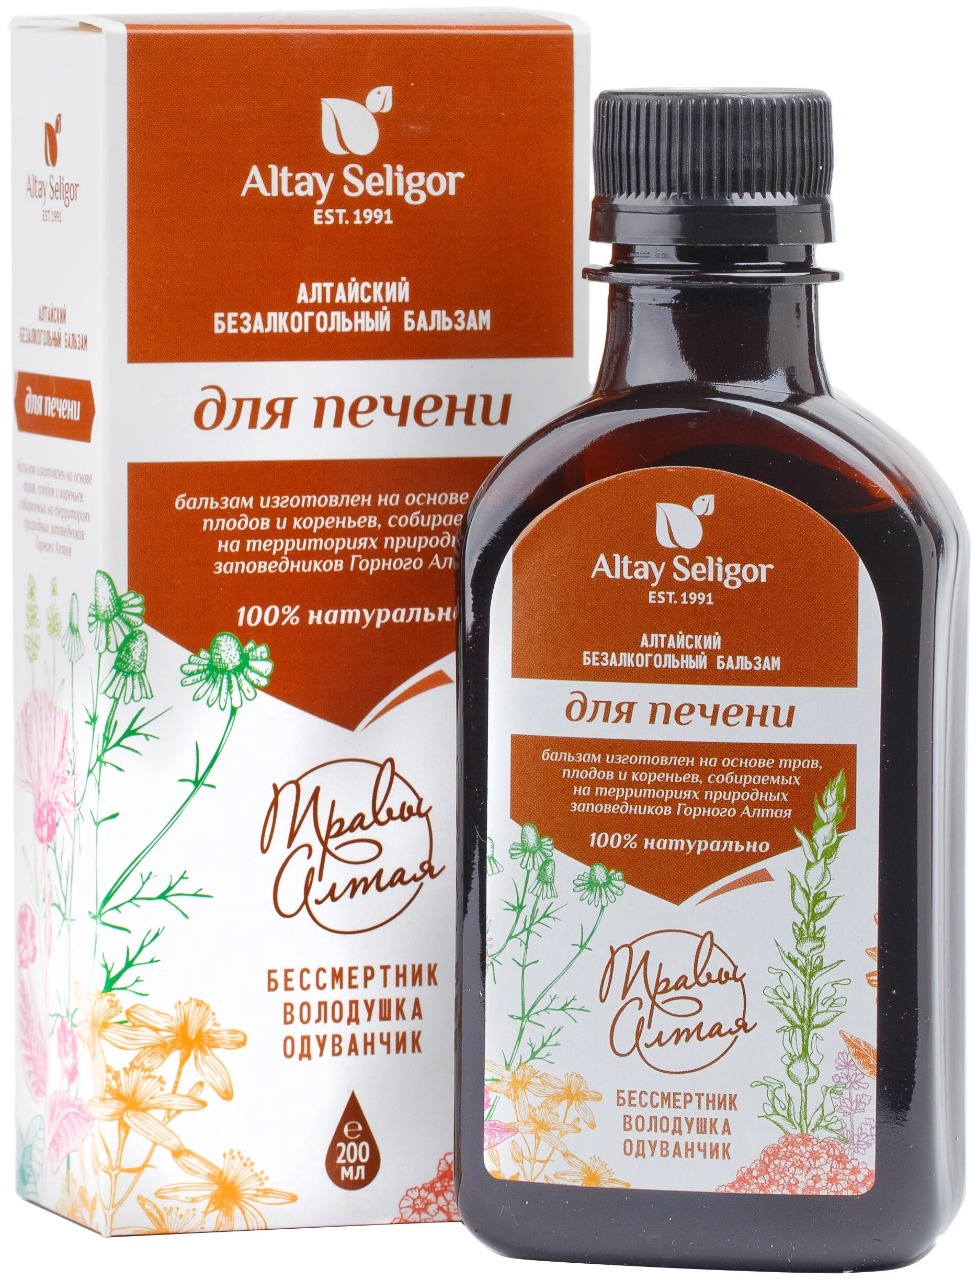 Купить Бальзам Altay Seligor Для печени 200 мл, Алтай-Селигор